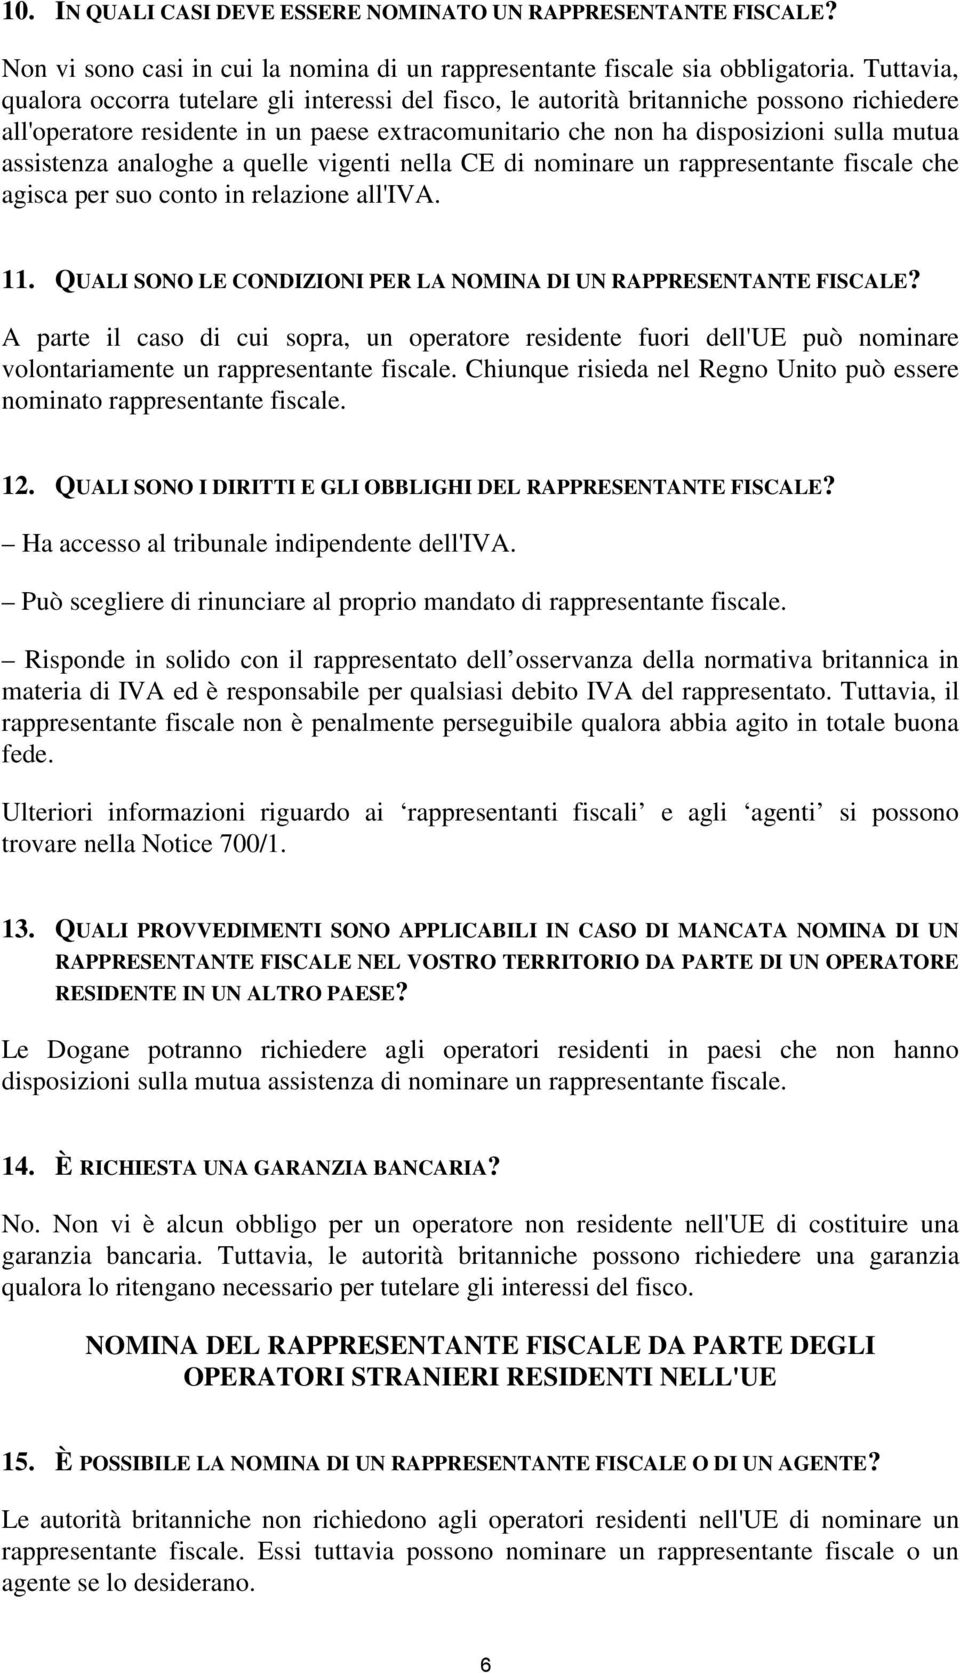 assistenza analoghe a quelle vigenti nella CE di nominare un rappresentante fiscale che agisca per suo conto in relazione all'iva. 11.